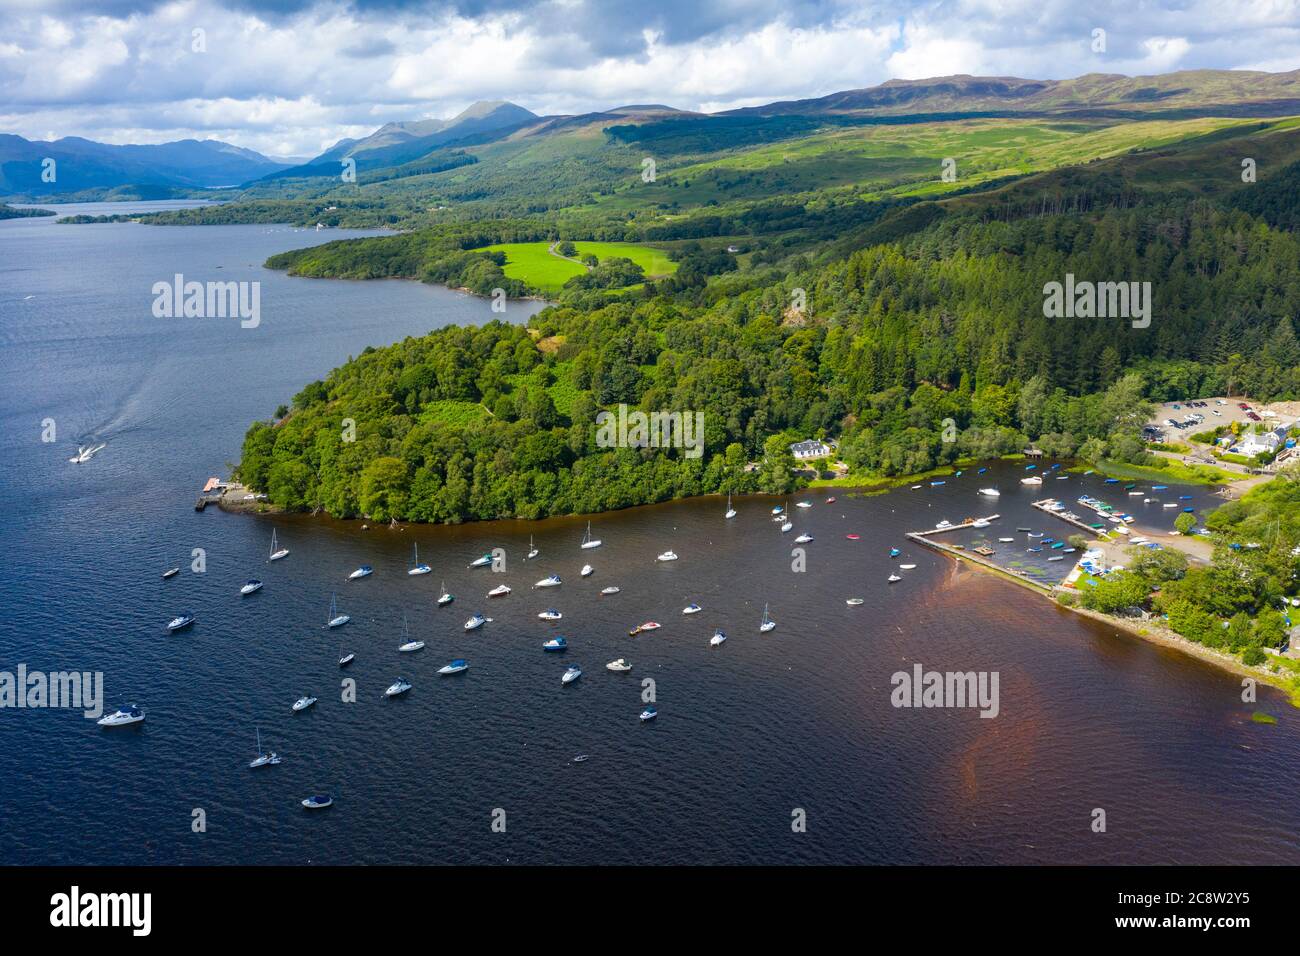 Vista aérea del pueblo de Balmaha a orillas del lago Lomond en el lago Lomond y el Parque Nacional Trossachs, Escocia, Reino Unido Foto de stock